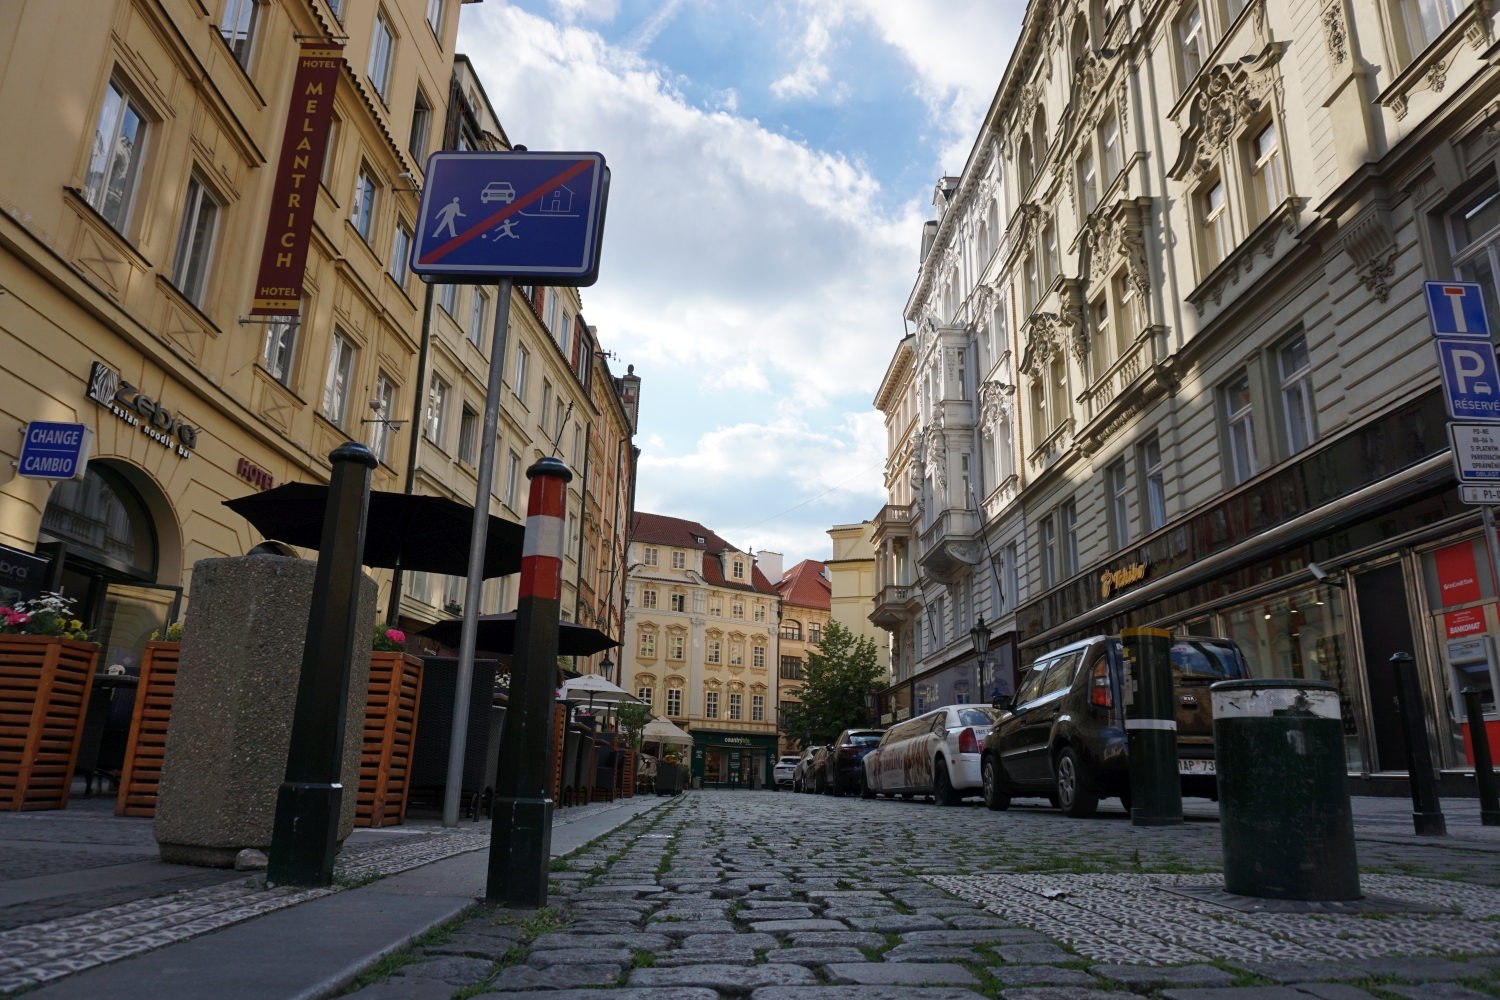 Durch diese Durchgangsstraße zwischen dem Wenzelsplatz und dem Altstädter Ring zogen jährlich vermutlich Millionen Touristen. Prag hatte insgesamt ca. 10 Millionen Touristen pro Jahr. Foto: K. Kountouroyanis